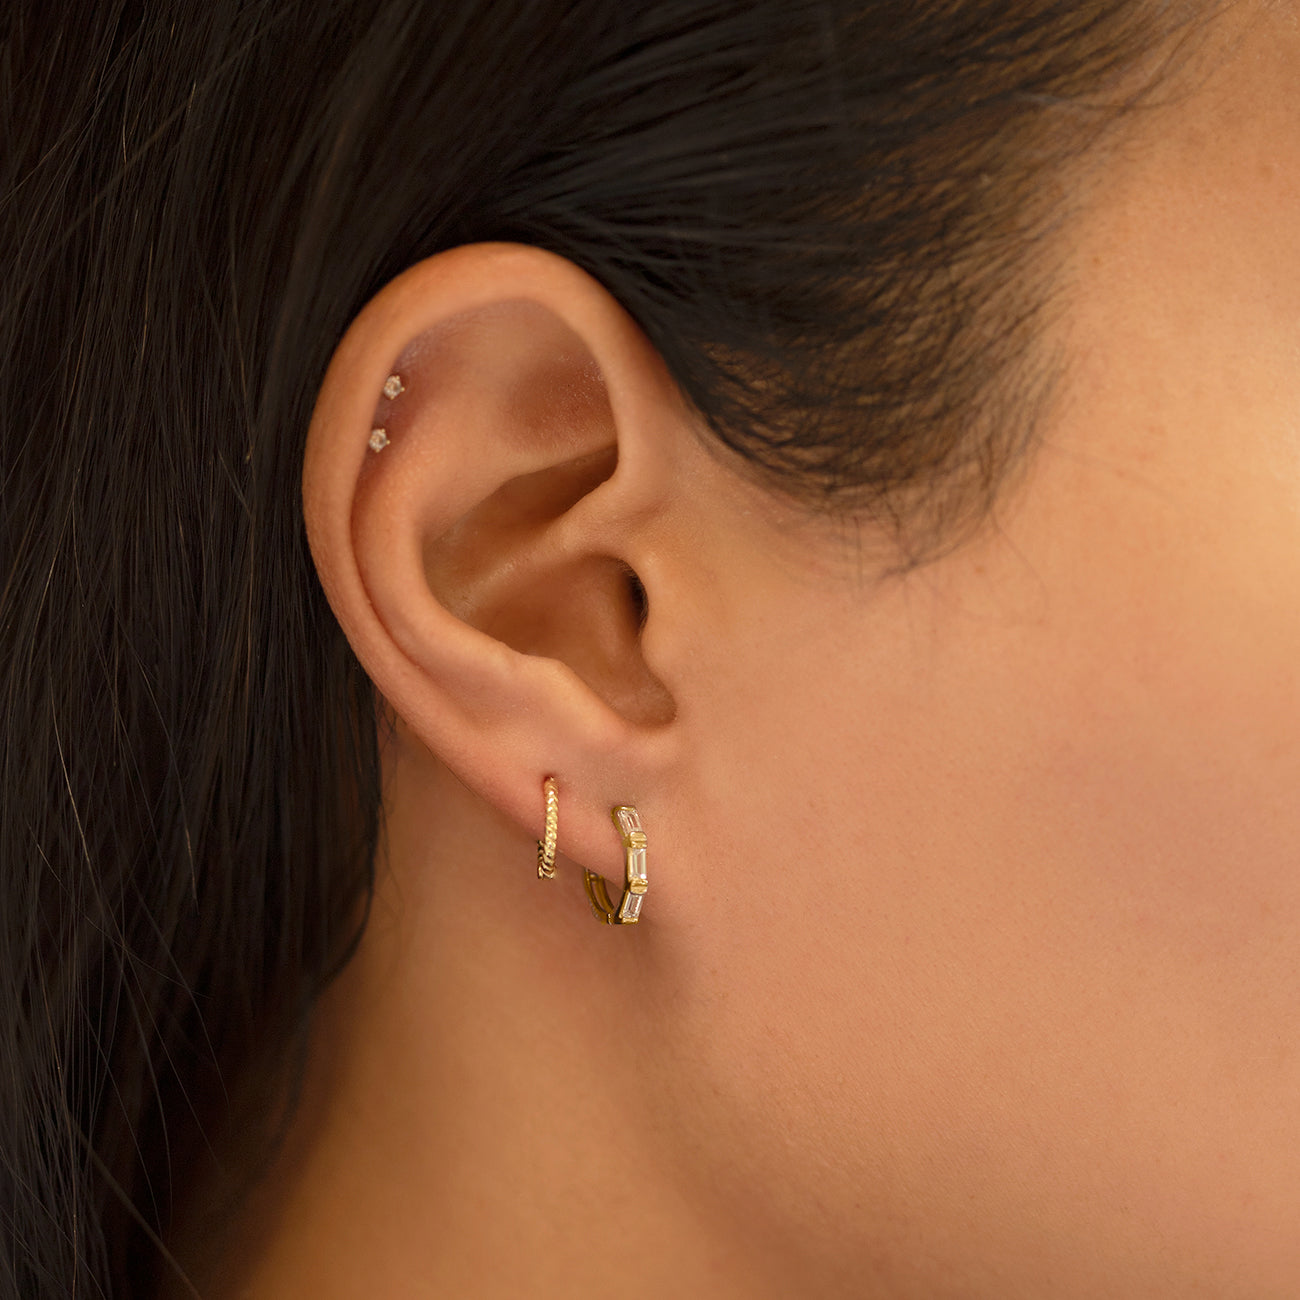 Cartilage Earrings  Assolari